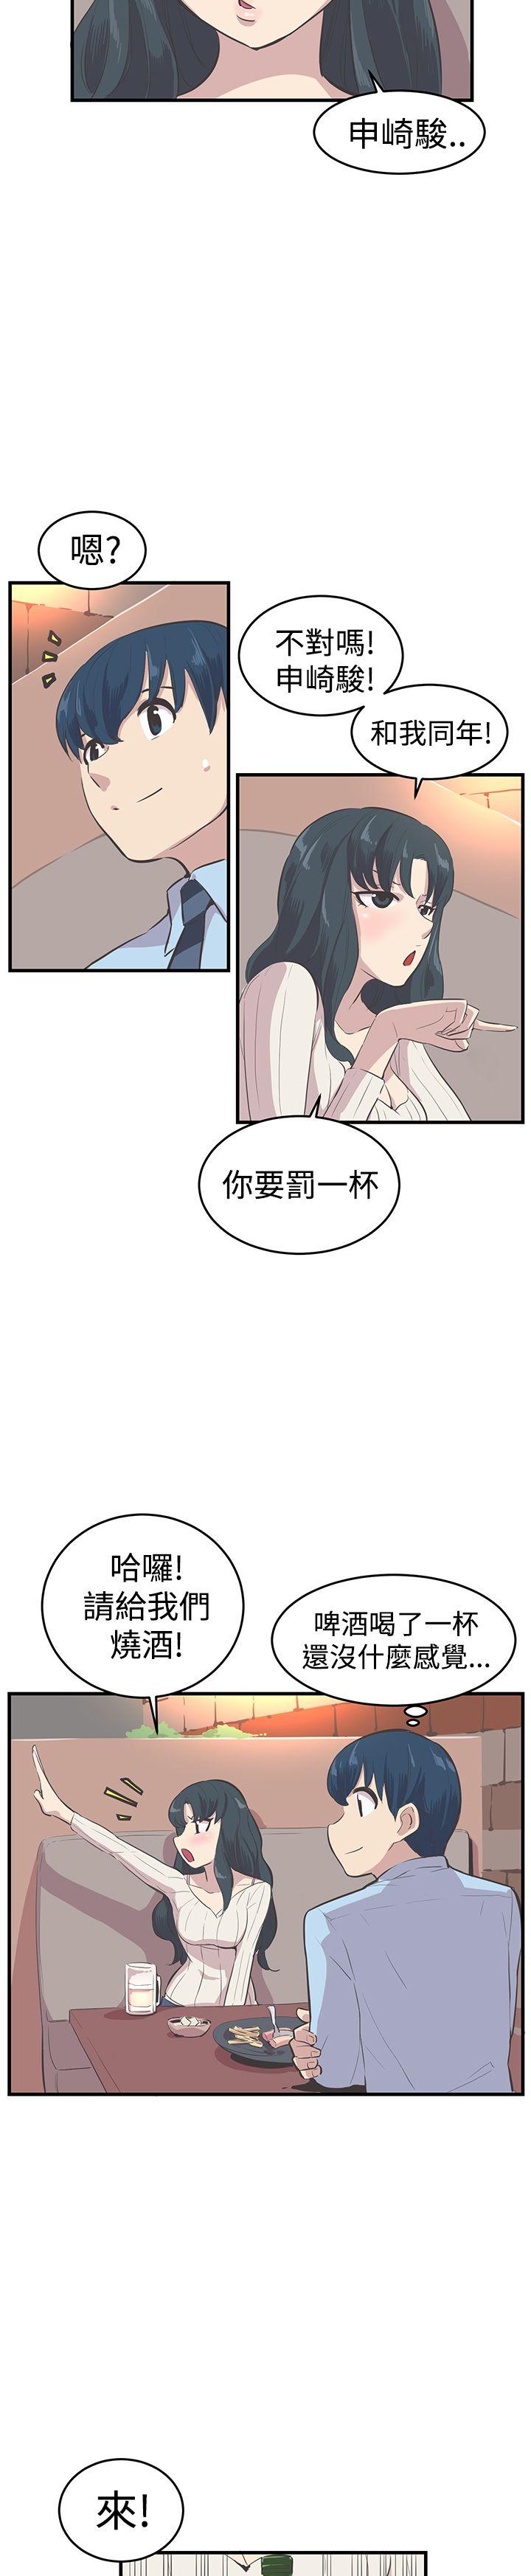 青春男女(完结)  第10话 漫画图片14.jpg